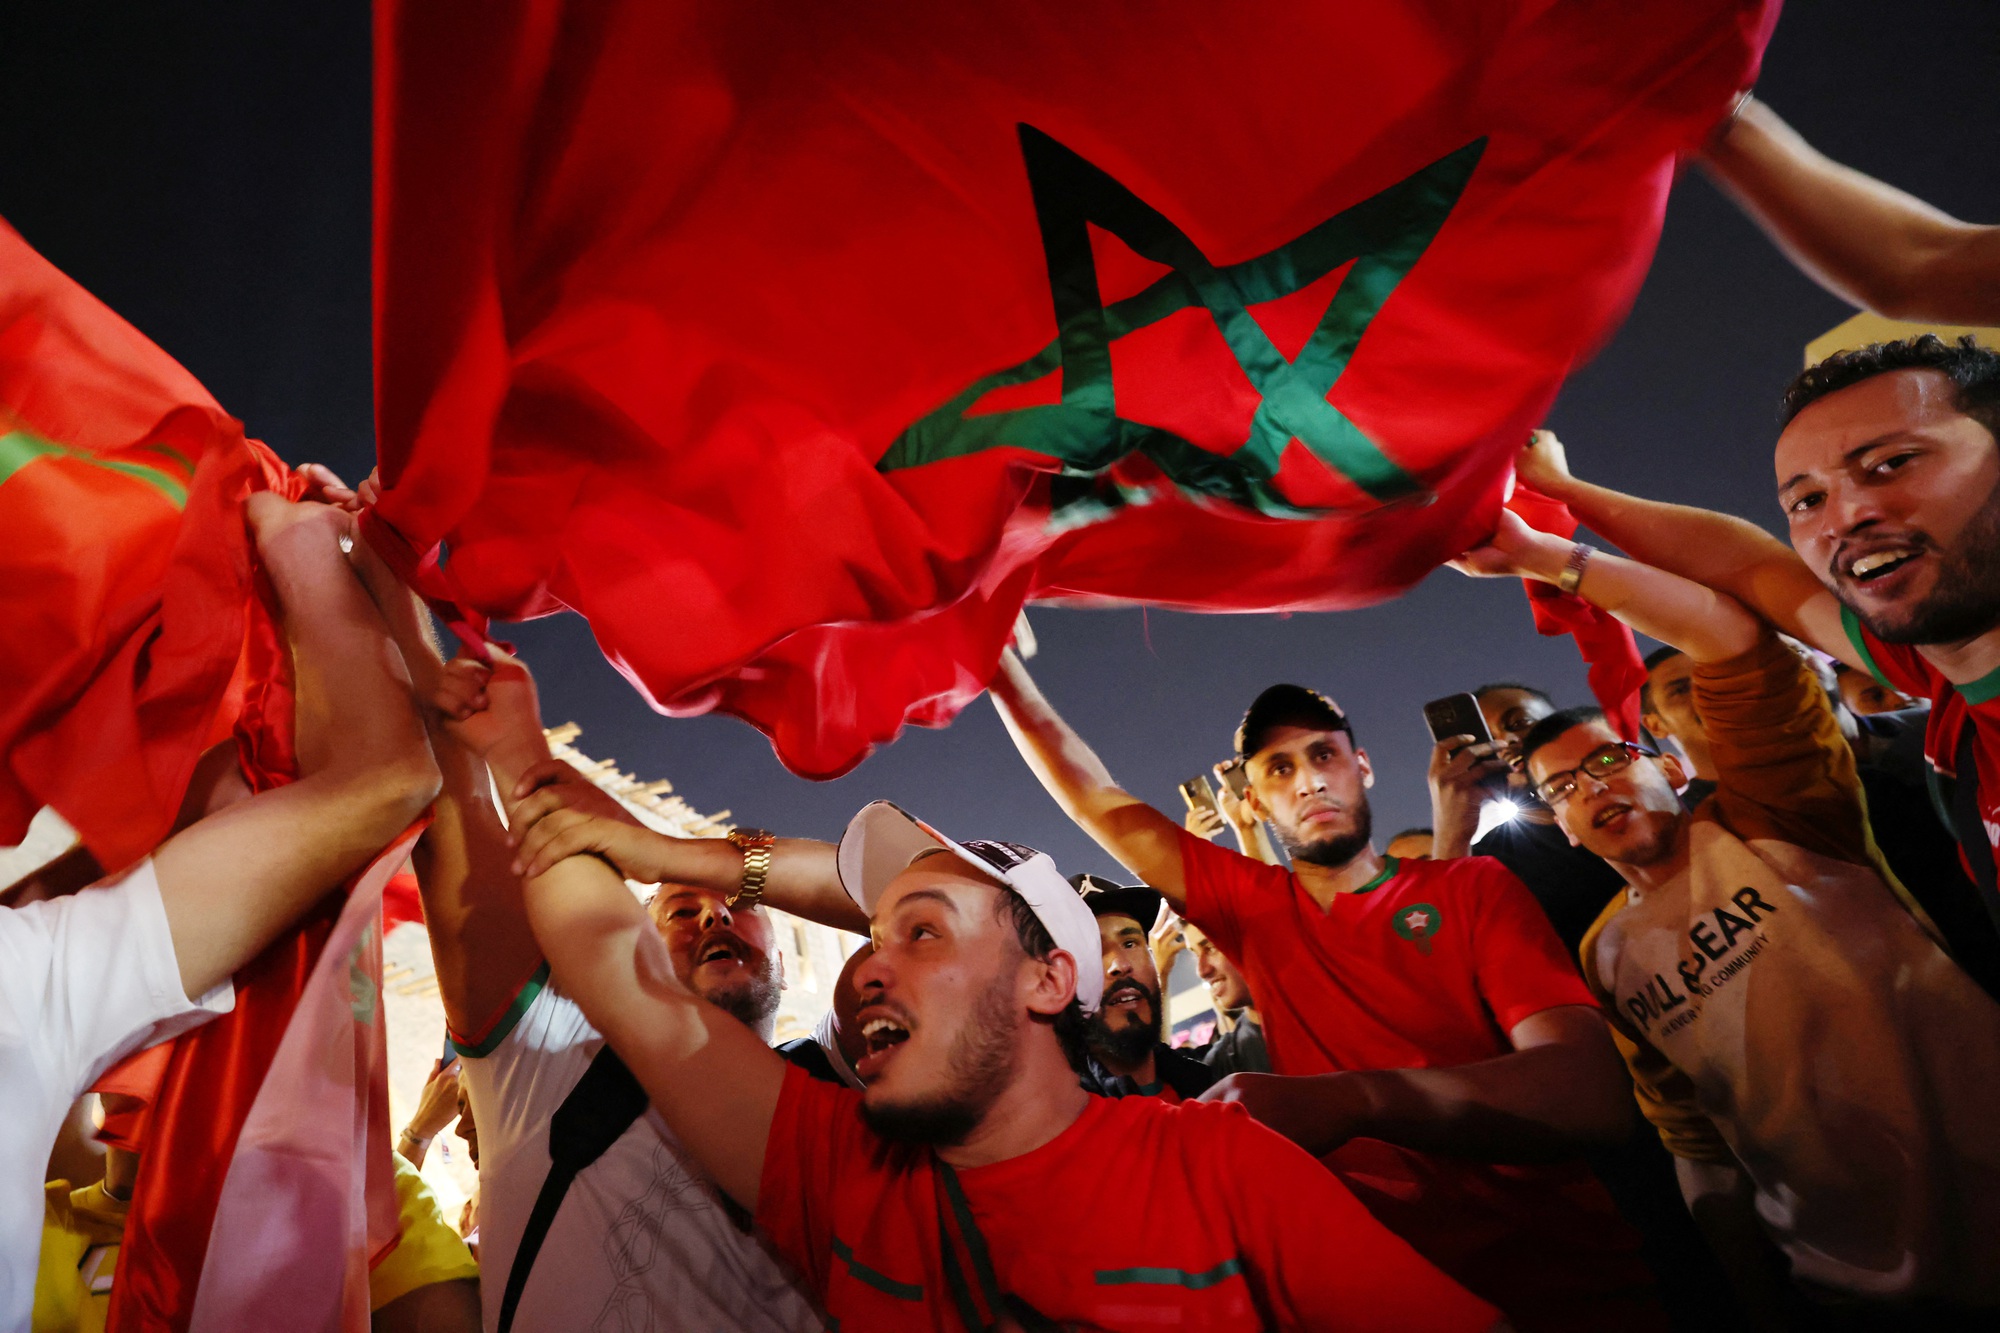 Tuyển Morocco: Đến năm 2024, đội tuyển bóng đá Morocco đã trở thành một đội mạnh mẽ với những cầu thủ tài năng. Việc tuyển dụng các tài năng trẻ như Hakim Ziyech và Achraf Hakimi đã giúp đội tuyển Morocco đạt được nhiều thành tích đáng kinh ngạc. Hãy xem họ đang làm gì trong những trận đấu sắp tới.